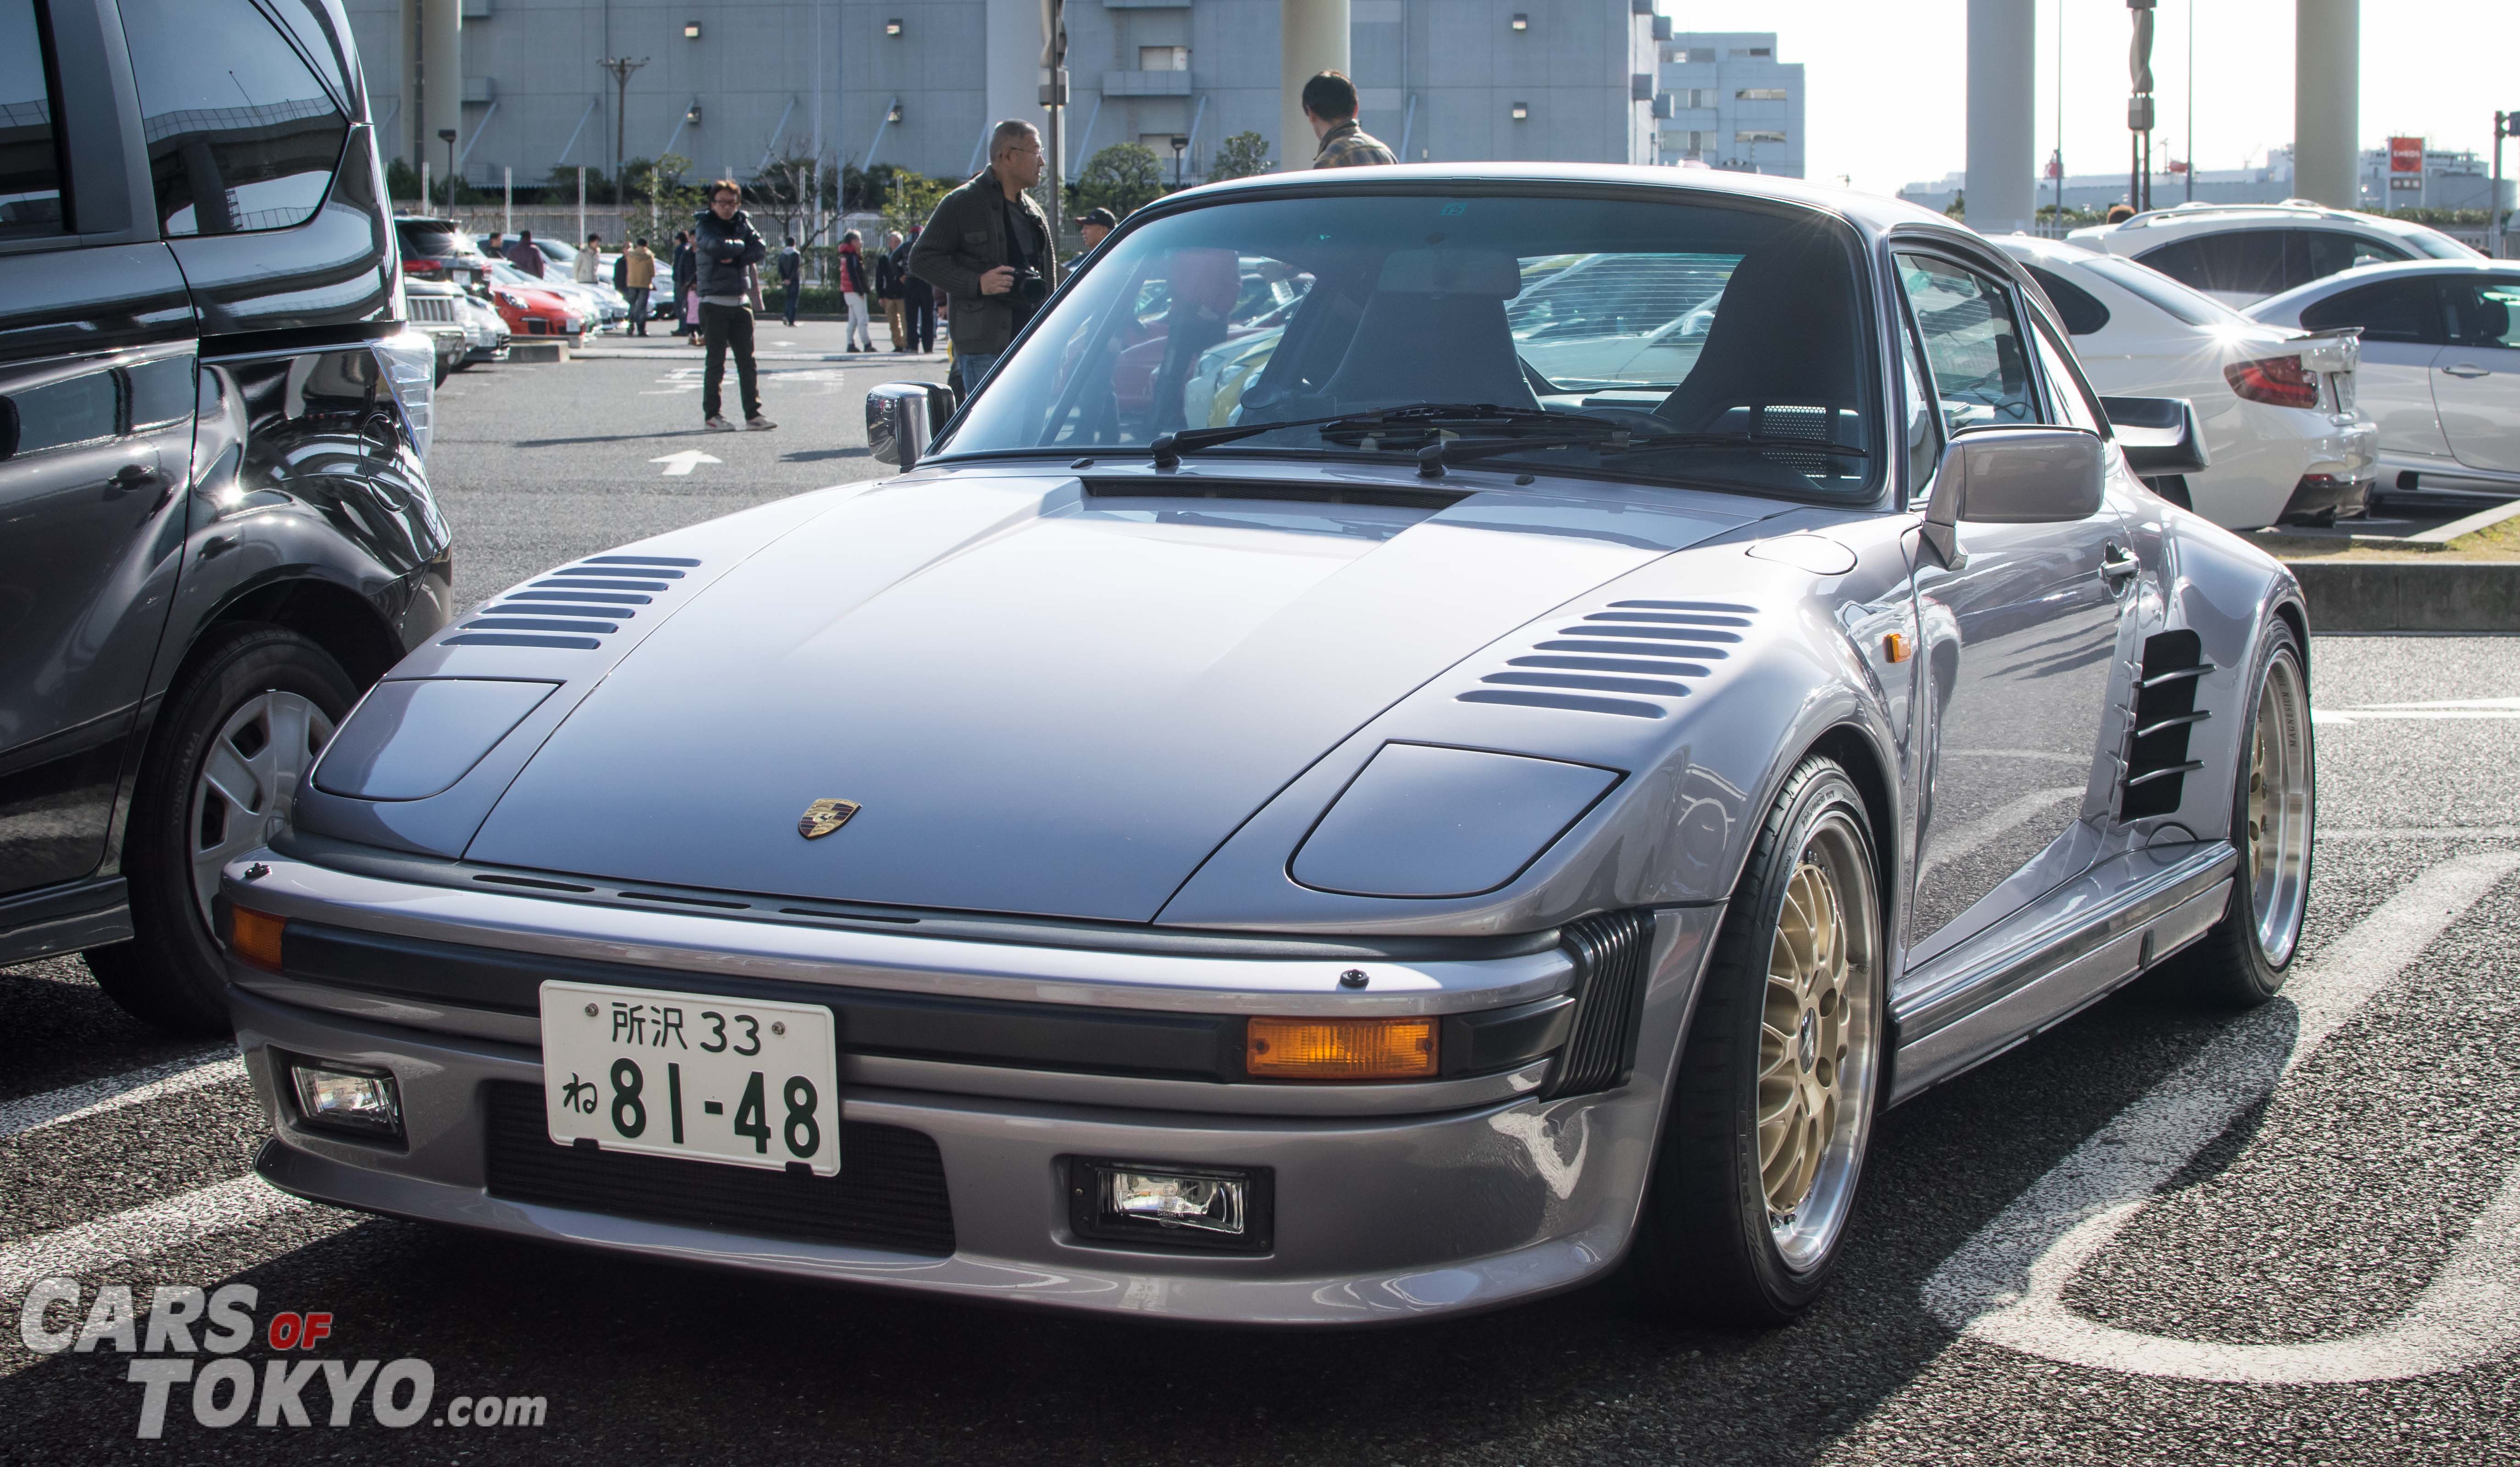 Cars of Tokyo Porsche 911 Flatnose